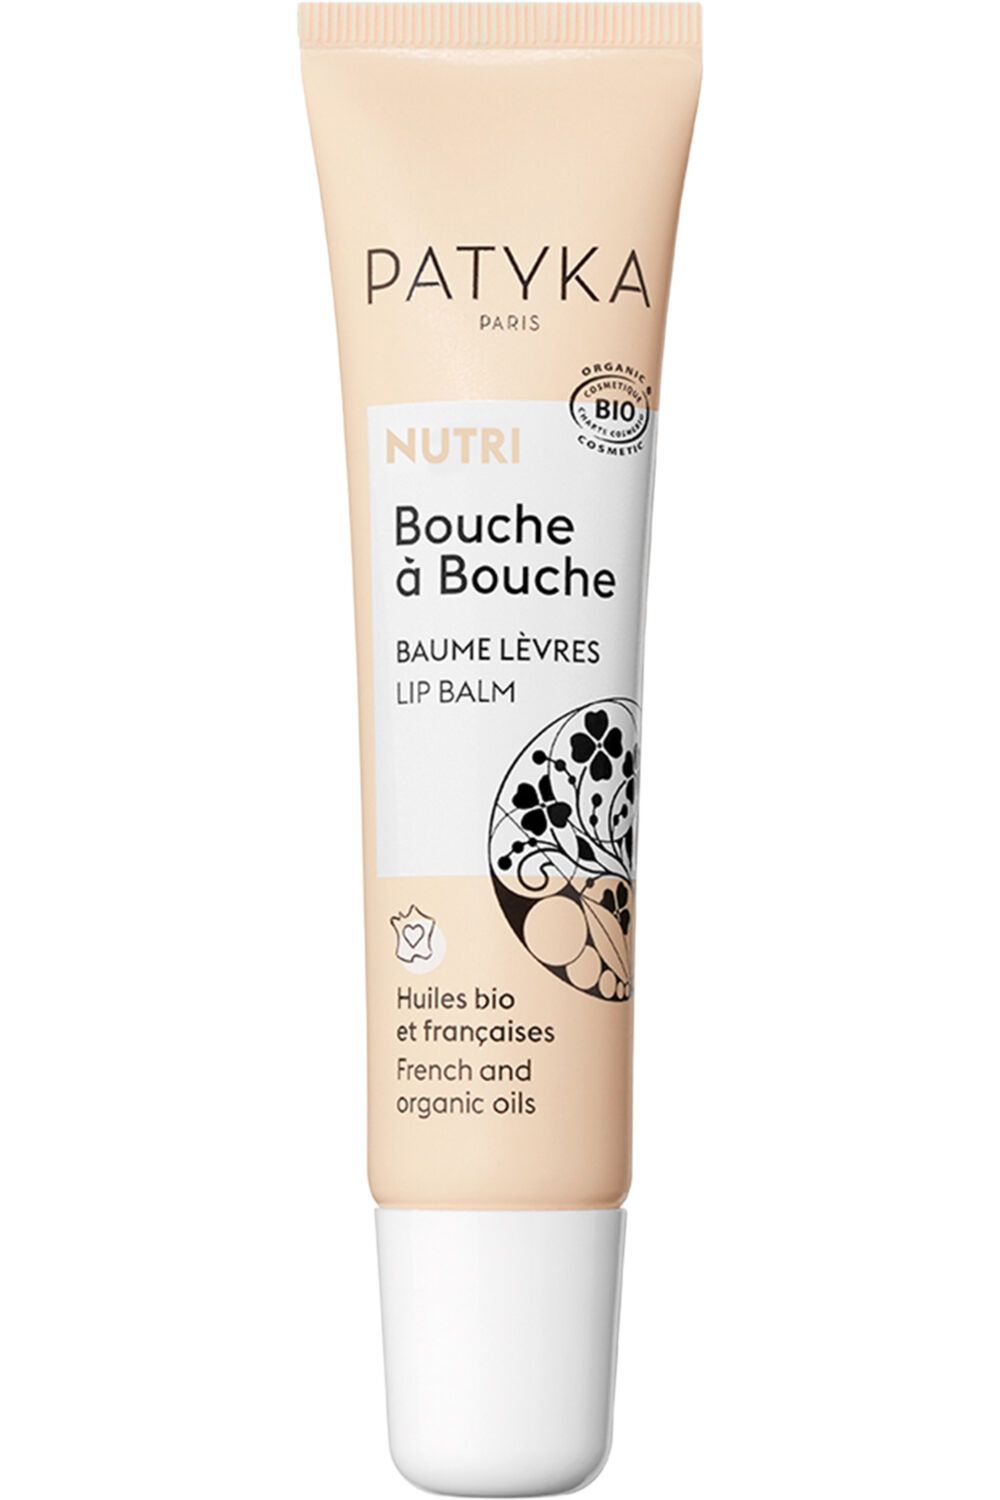 Patyka - Baume lèvres Bouche à Bouche